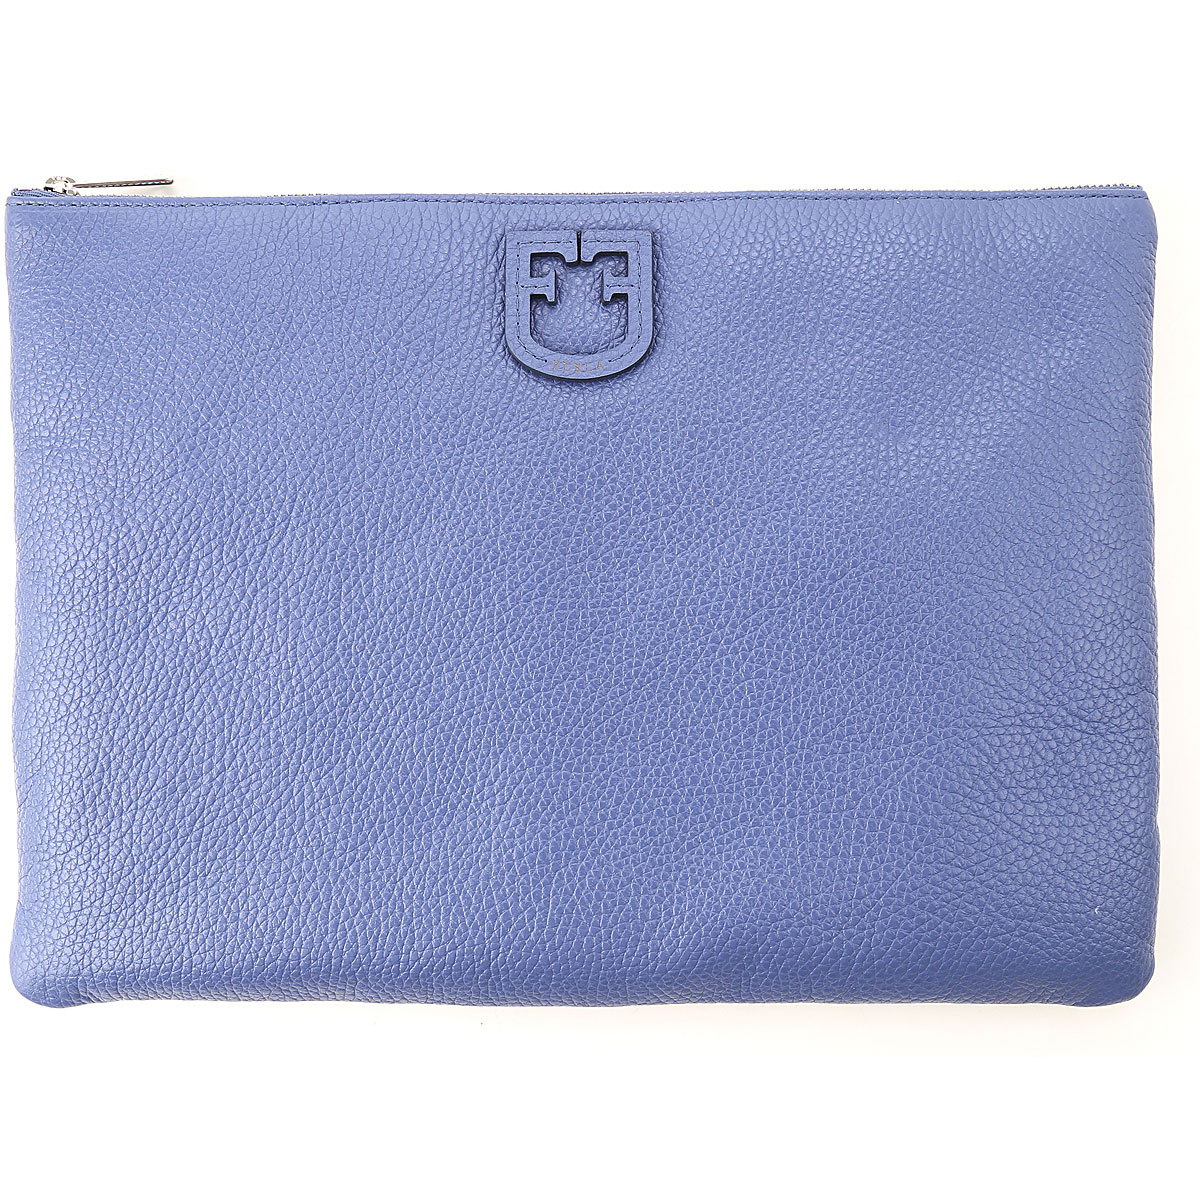 Furla Tasche für Damen Günstig im Sale, Pervinca blauviolett, Leder, 2017